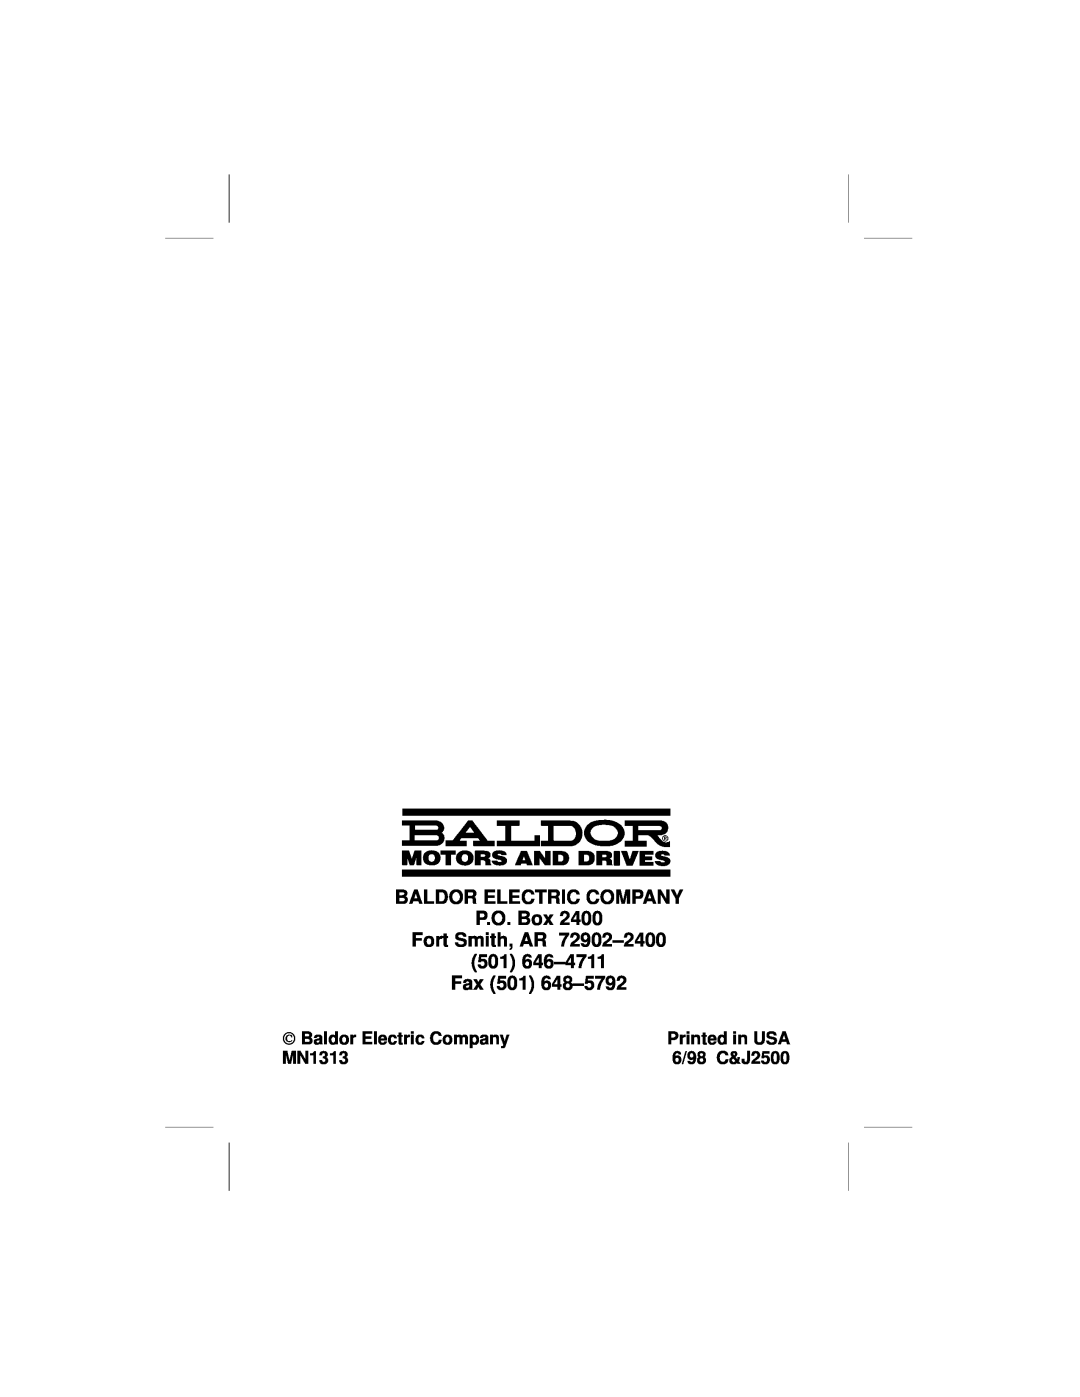 Baldor EXB009A01 BALDOR ELECTRIC COMPANY P.O. Box Fort Smith, AR 72902±2400, 501 646±4711 Fax 501 648±5792, Printed in USA 